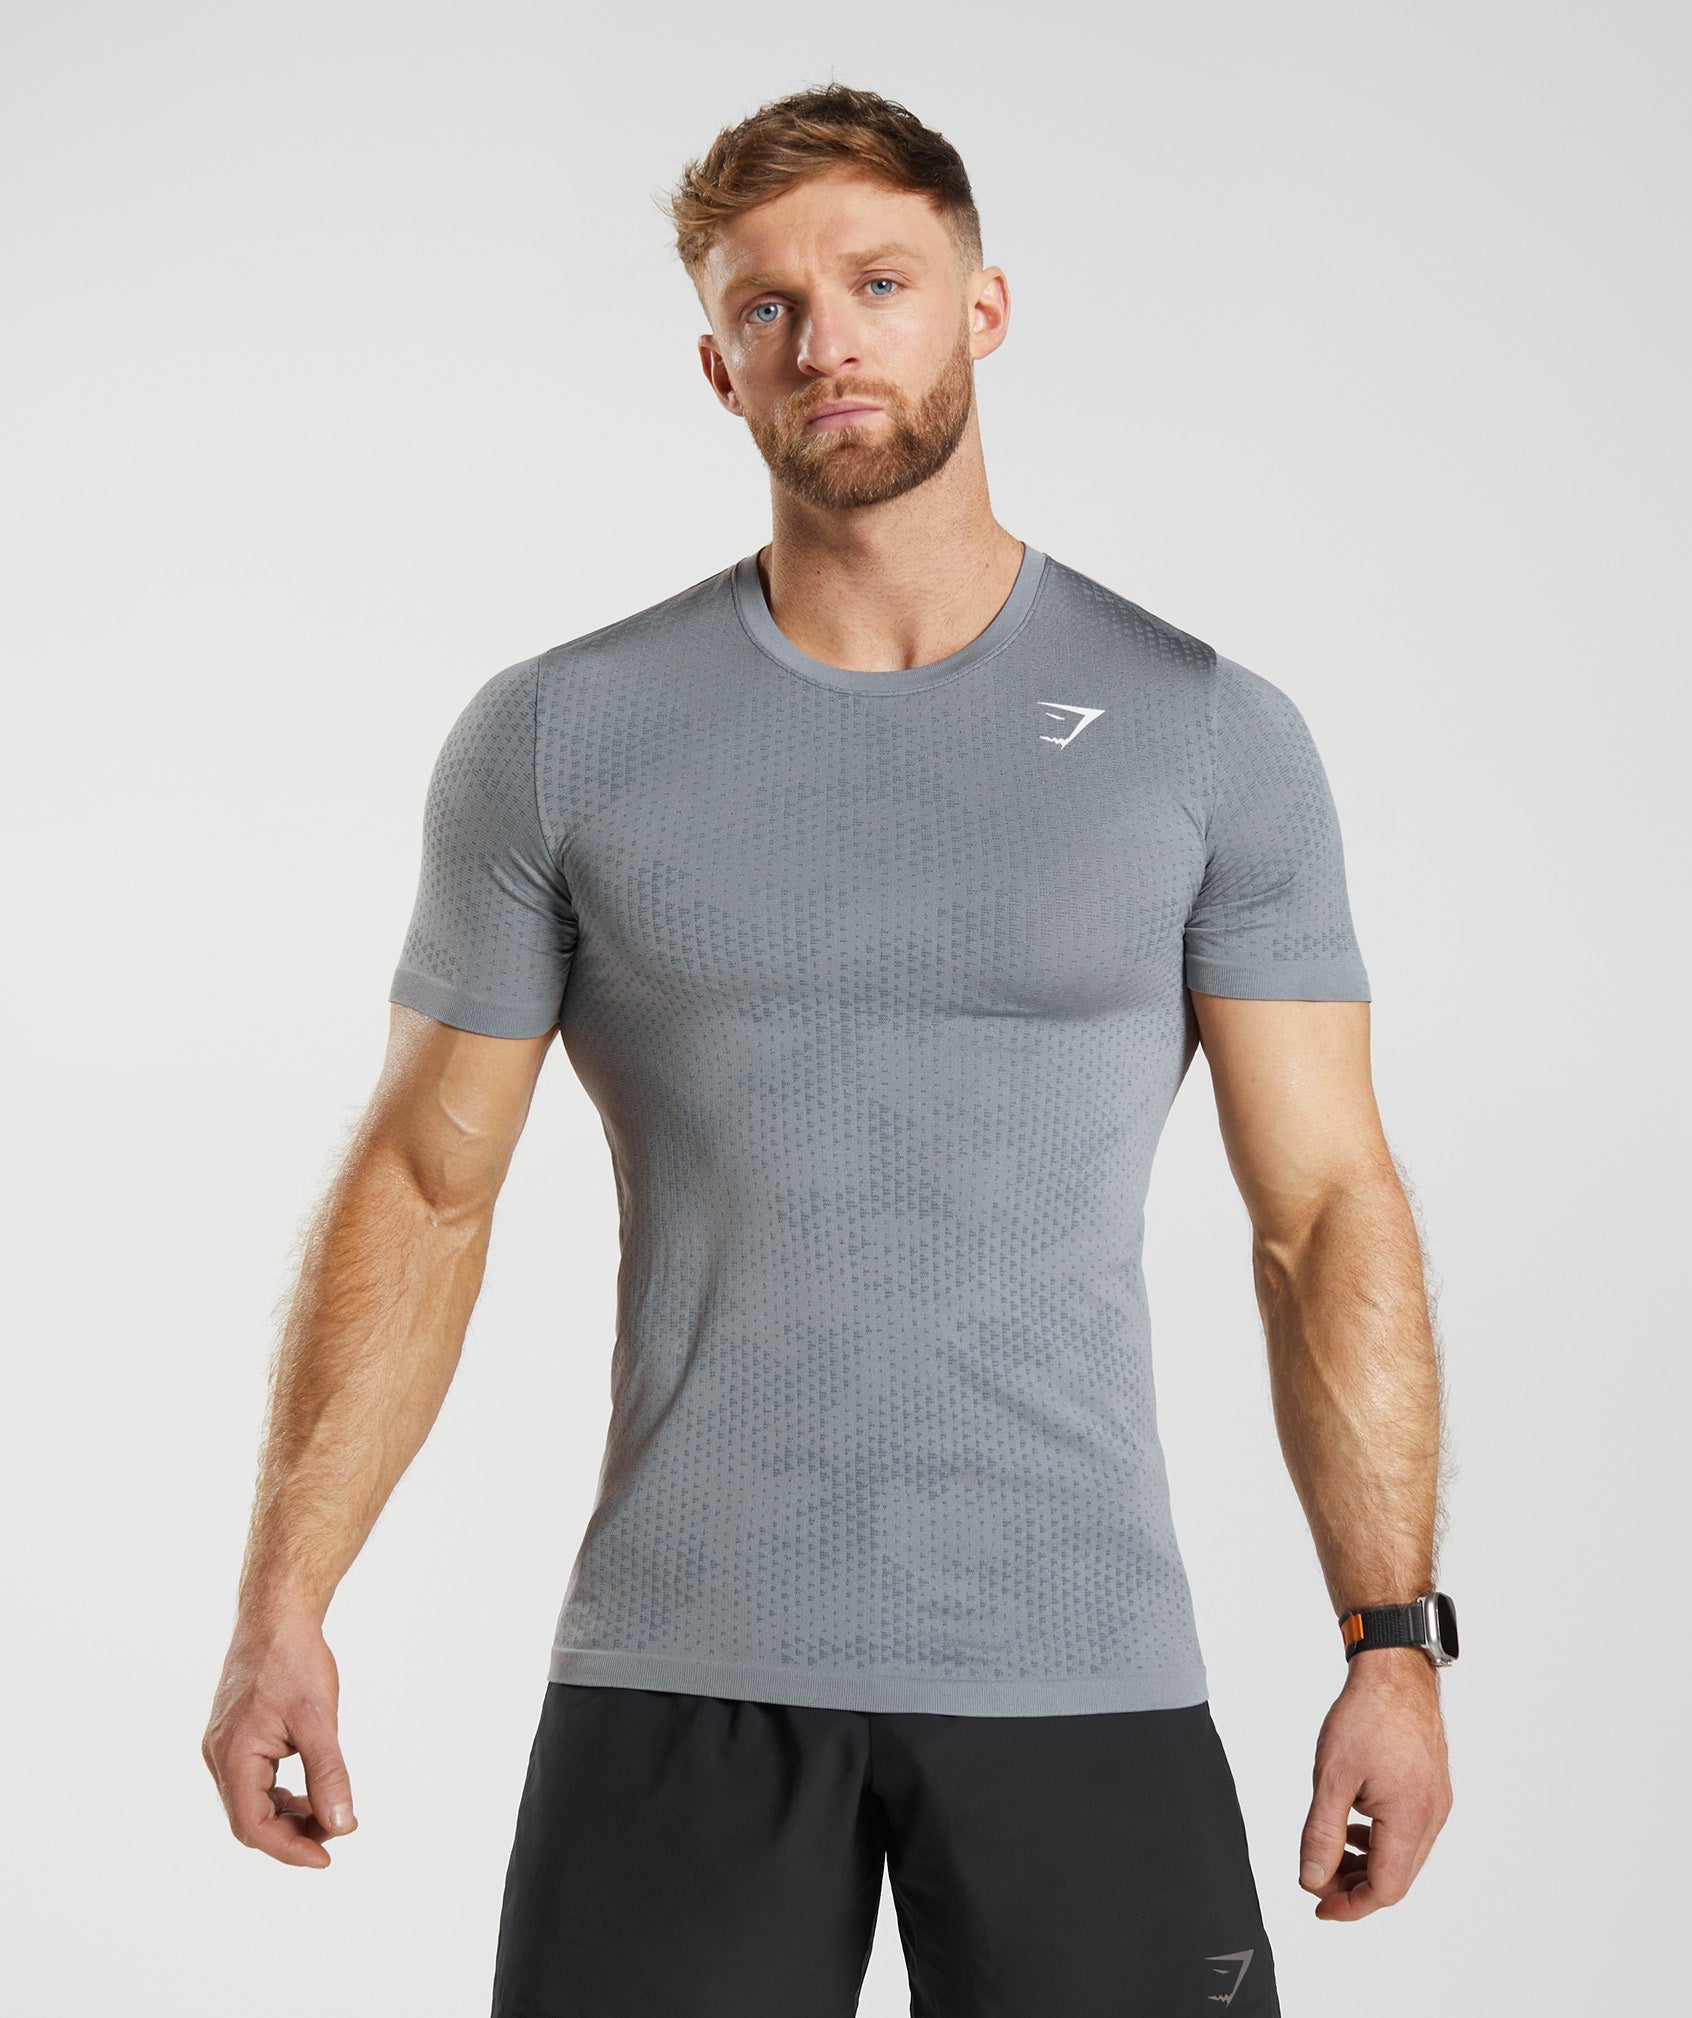 Sport Seamless T-Shirt in Drift Grey/Evening Blue